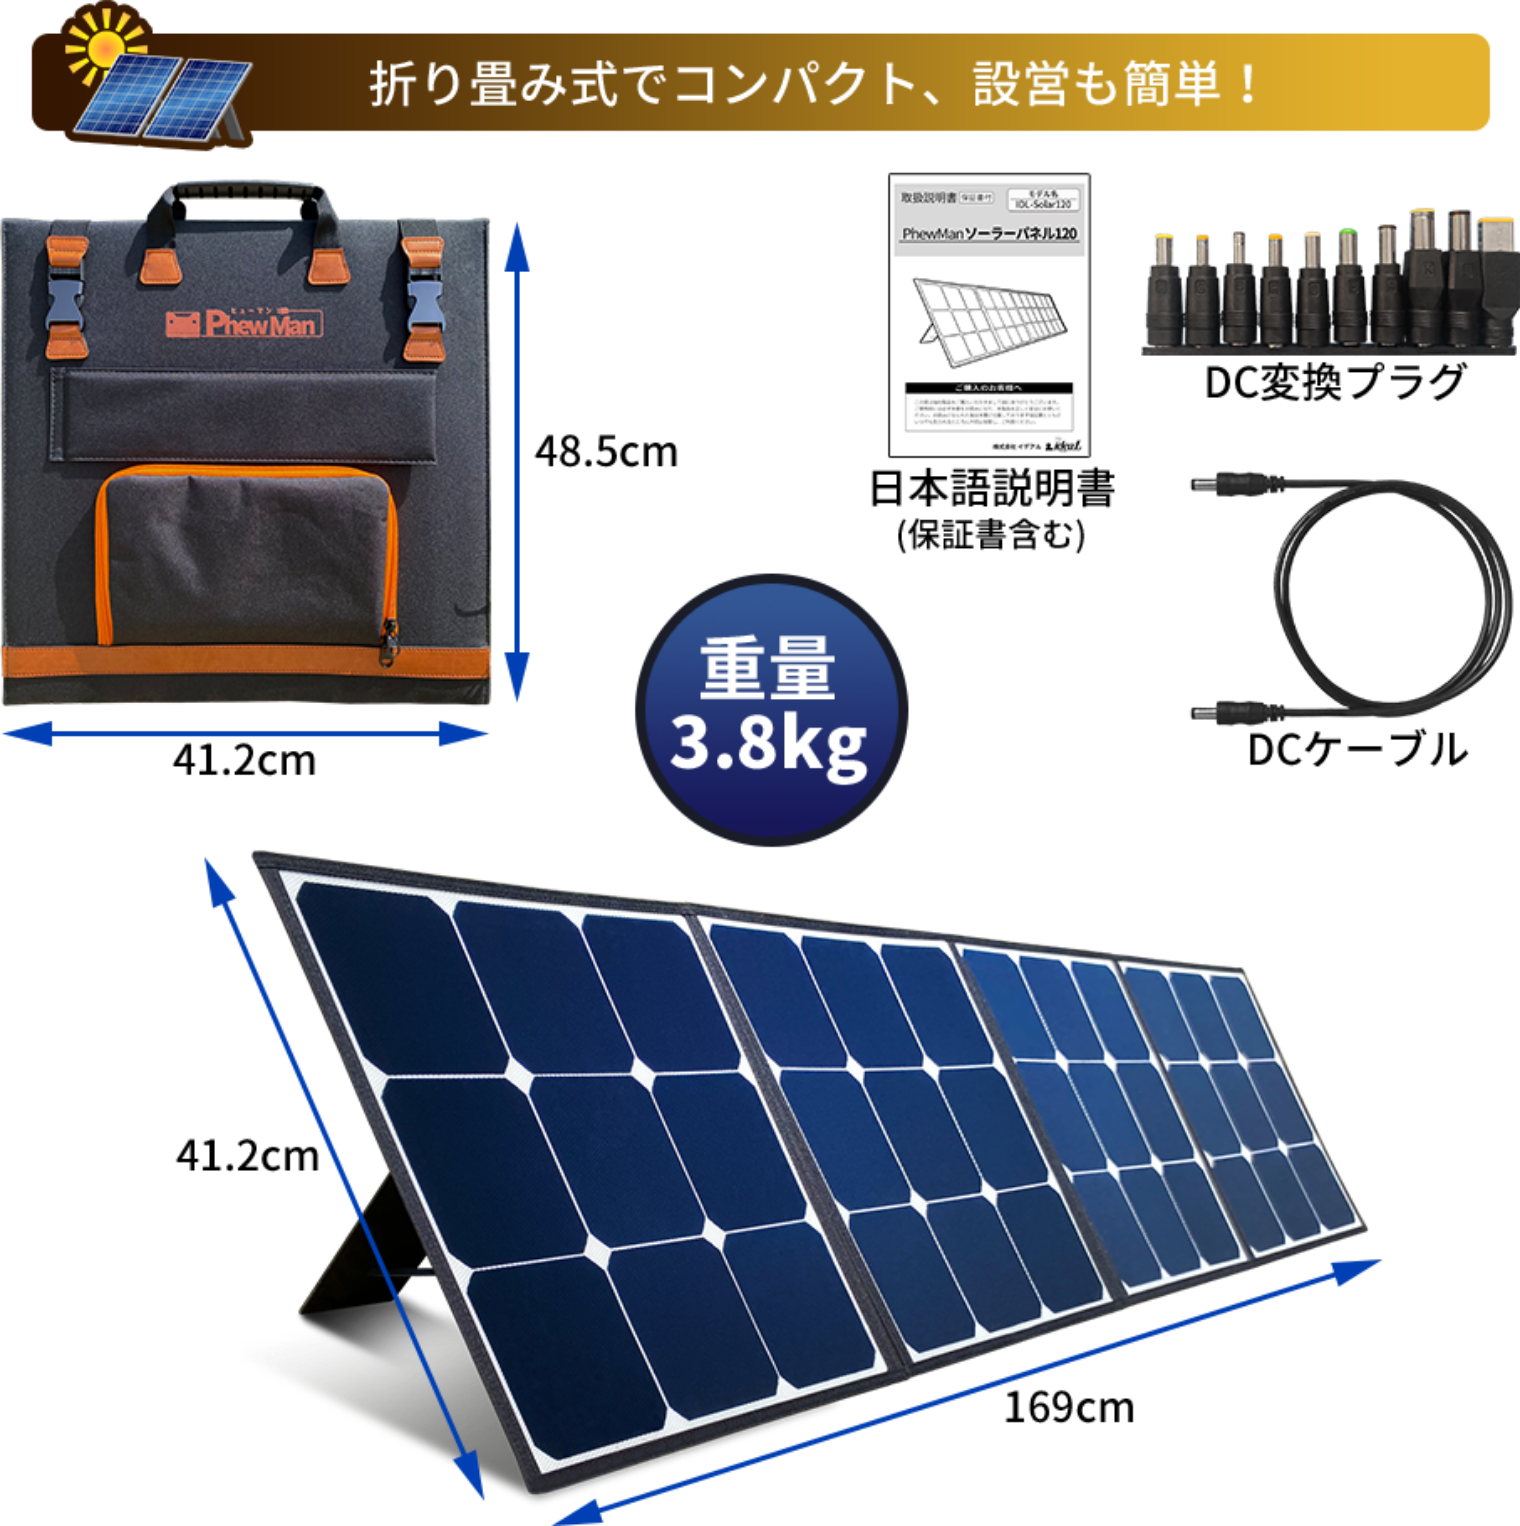 【新品】PhewMan ポータブル電源 1162Wh + ソーラーパネル120W